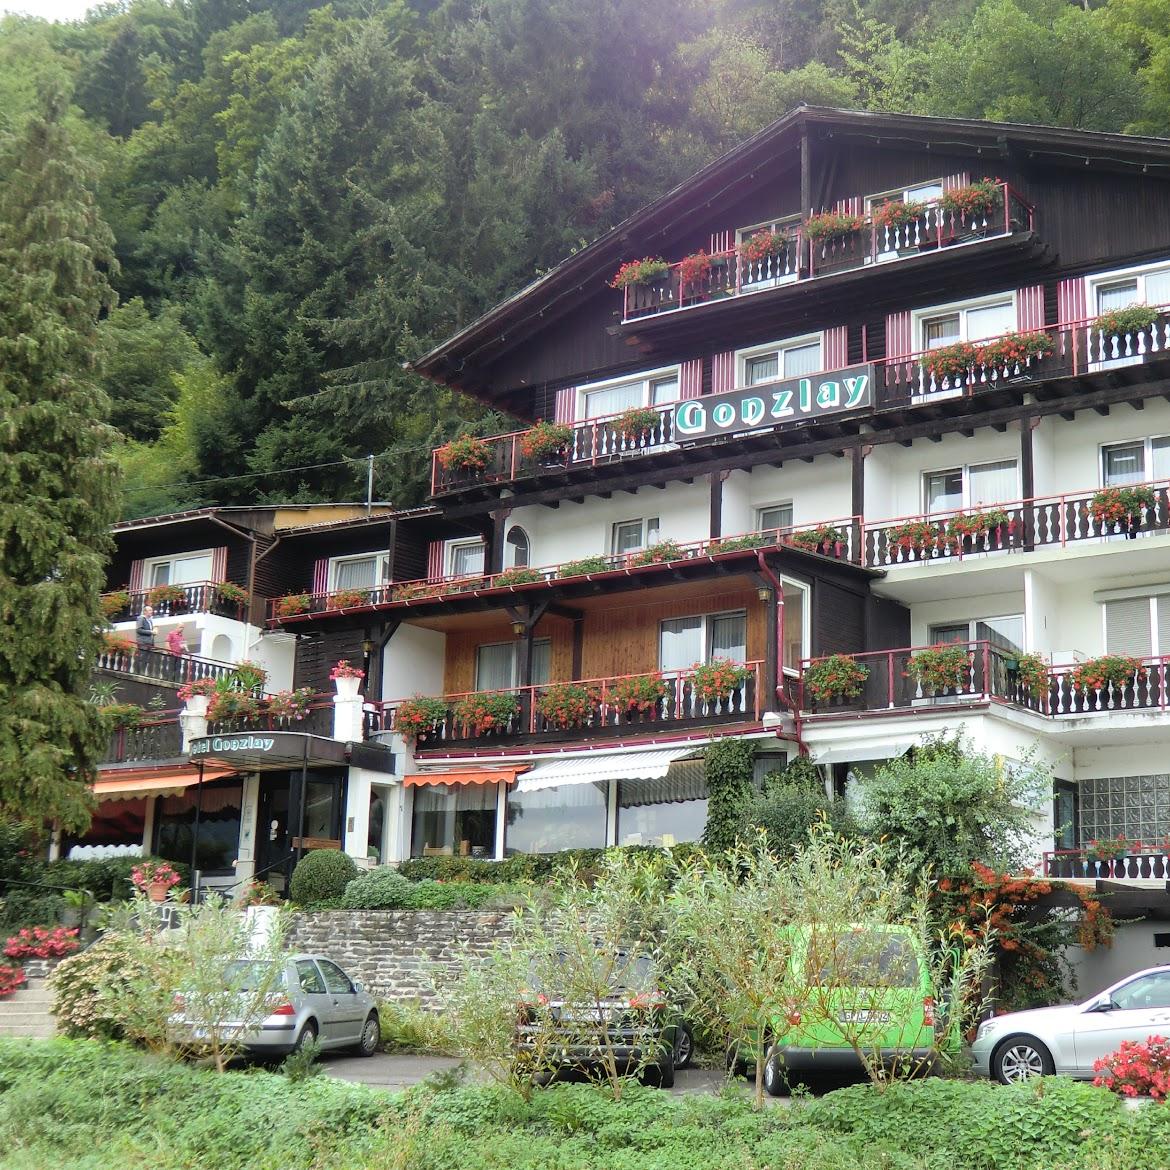 Restaurant "Hotel Gonzlay" in Traben-Trarbach